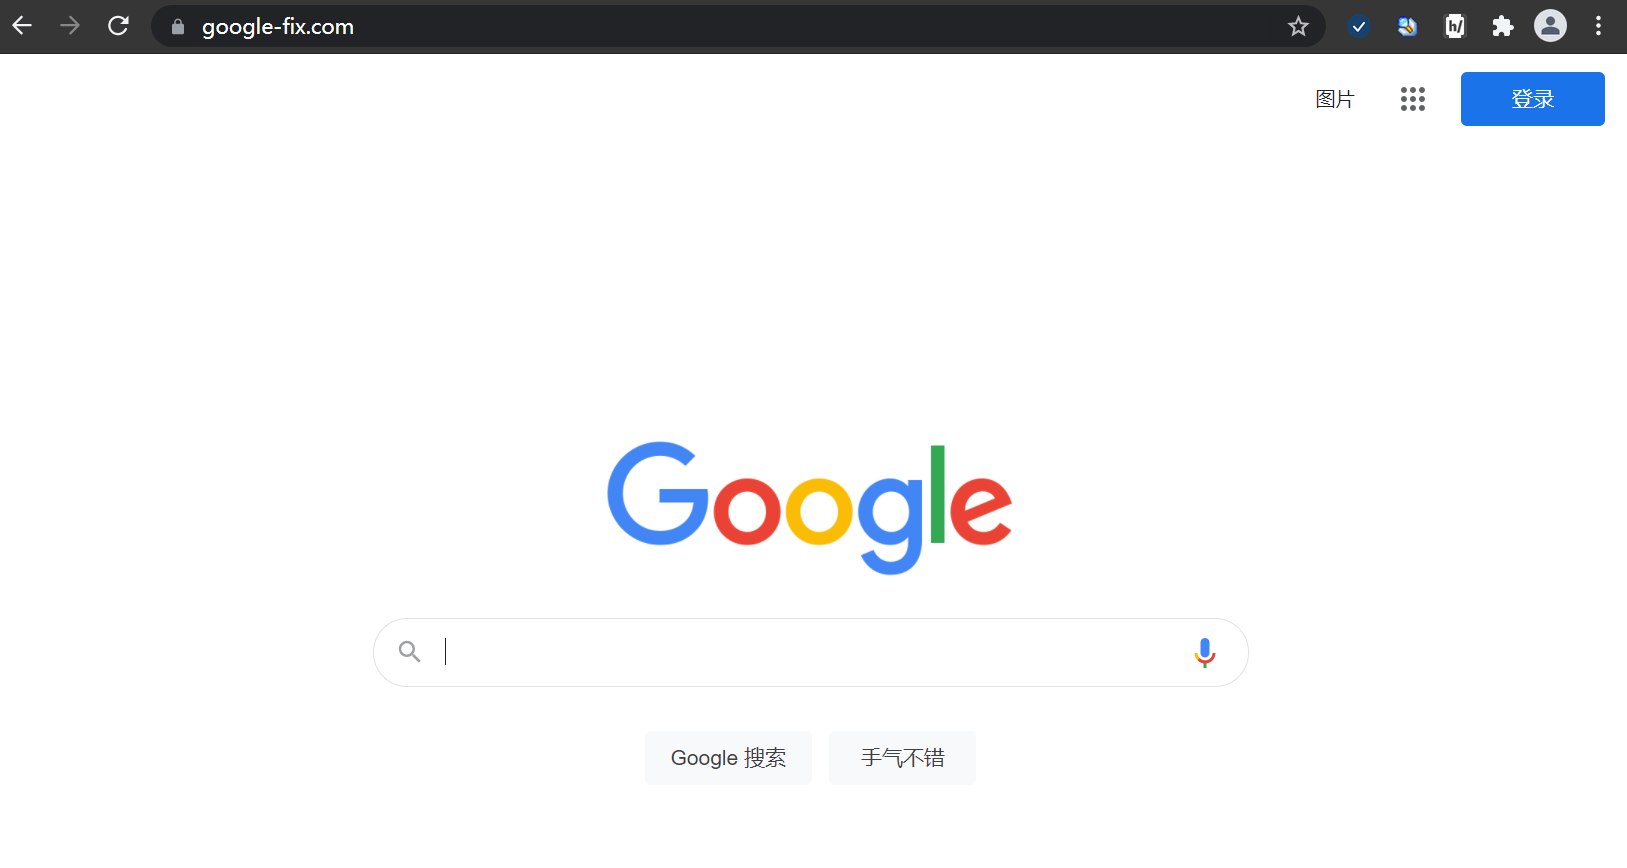 谷歌搜图(网页图片) - by CL - 动作信息 - Quicker